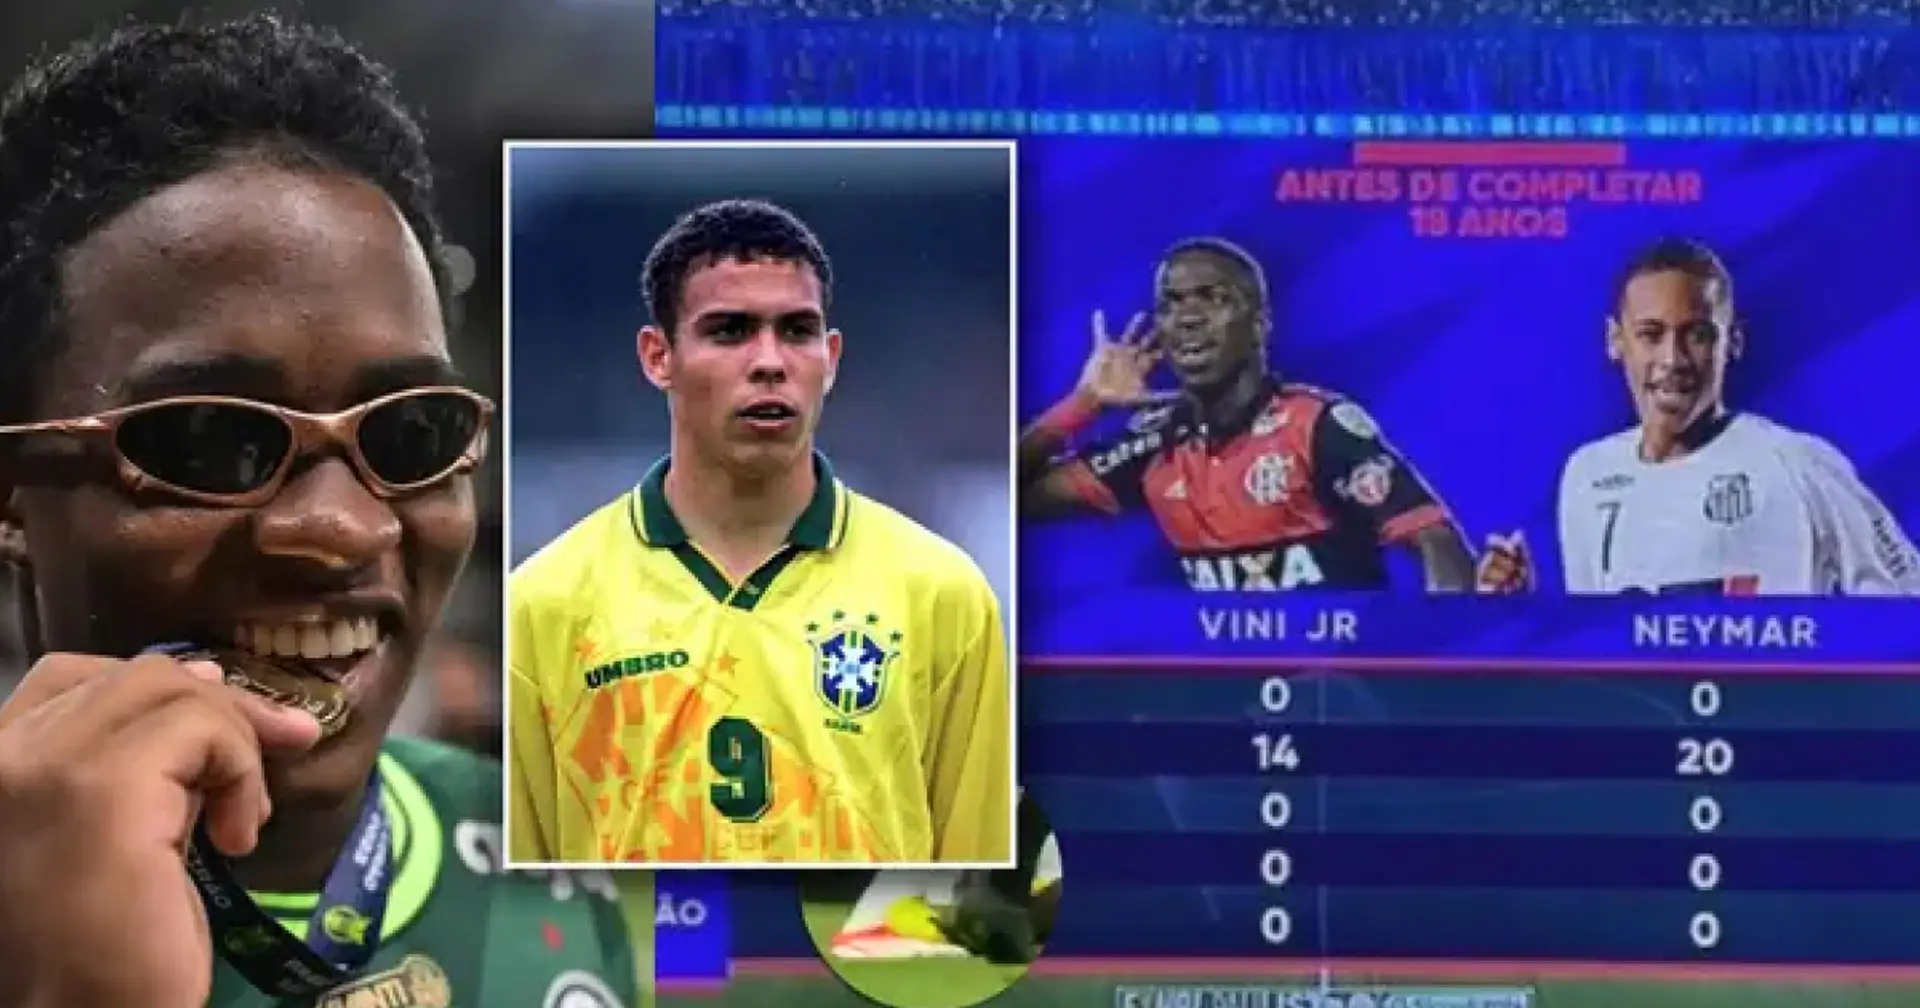 Endrick vor seinem 18. Geburtstag im Vergleich zu Neymar, Ronaldo und Vini Jr. im gleichen Alter - der Unterschied wird euch schockieren